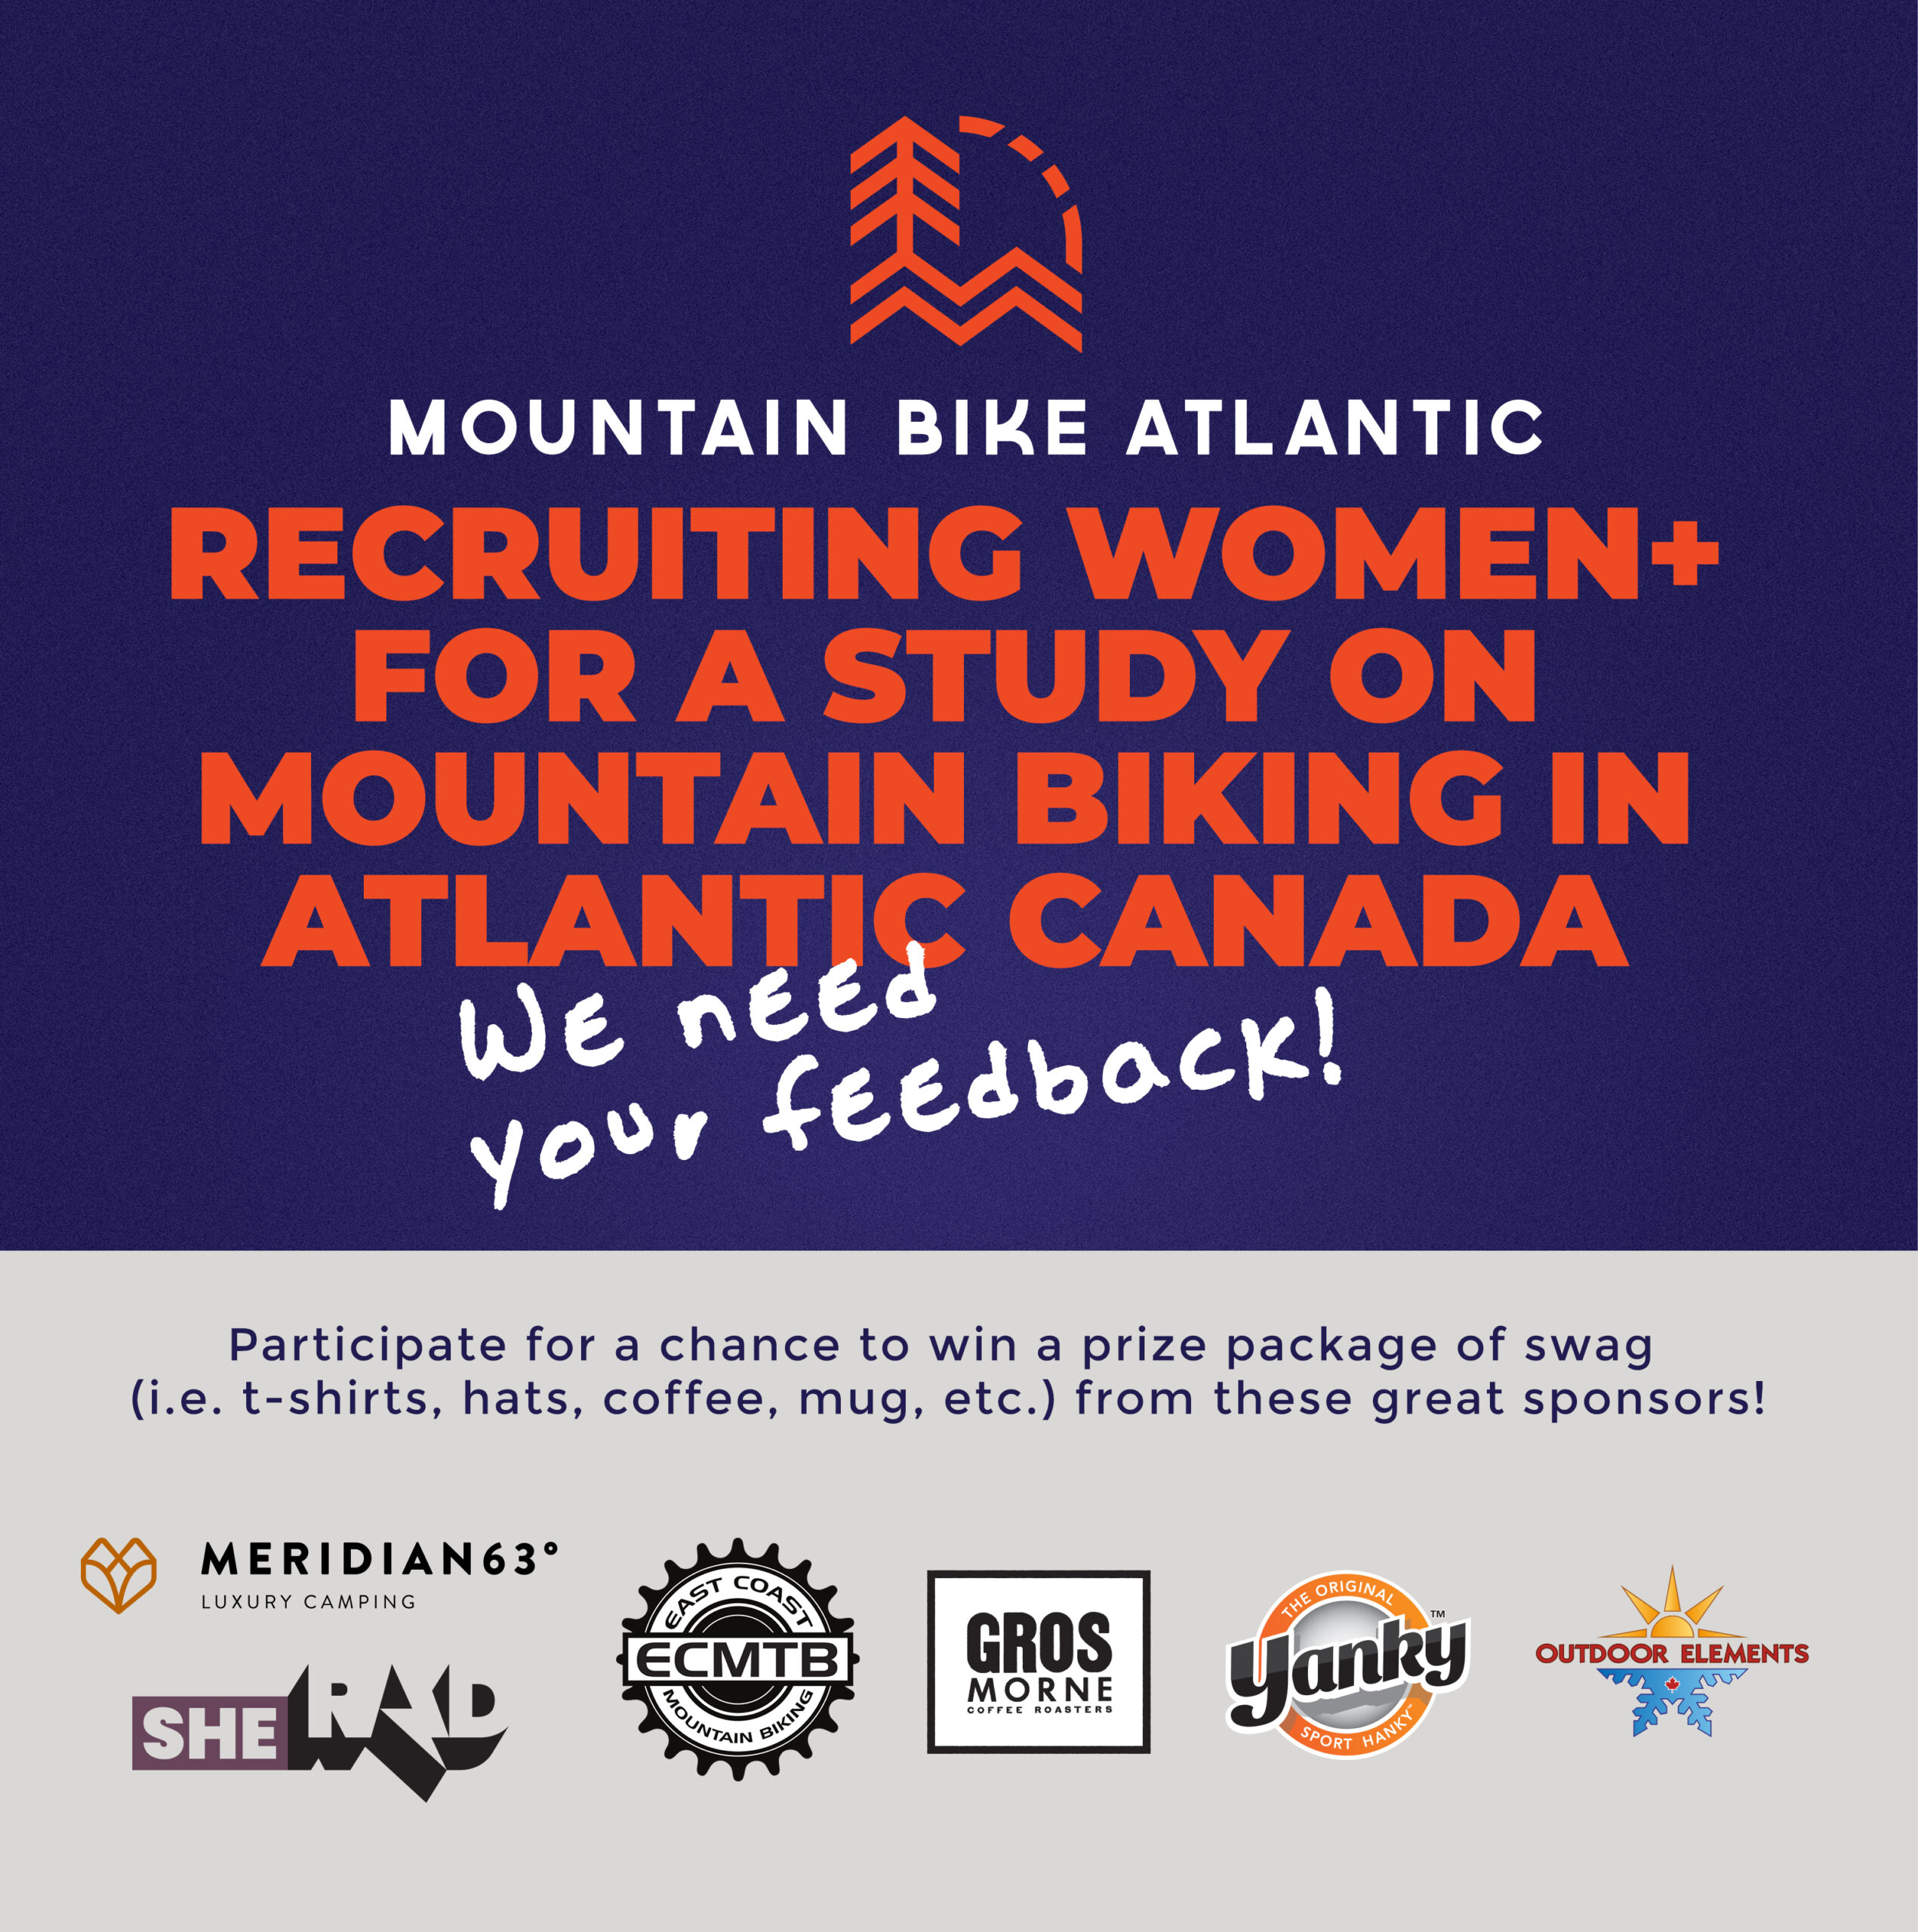 MTB Atlantic recrute Women+ pour une étude sur le vélo de montagne au Canada atlantique